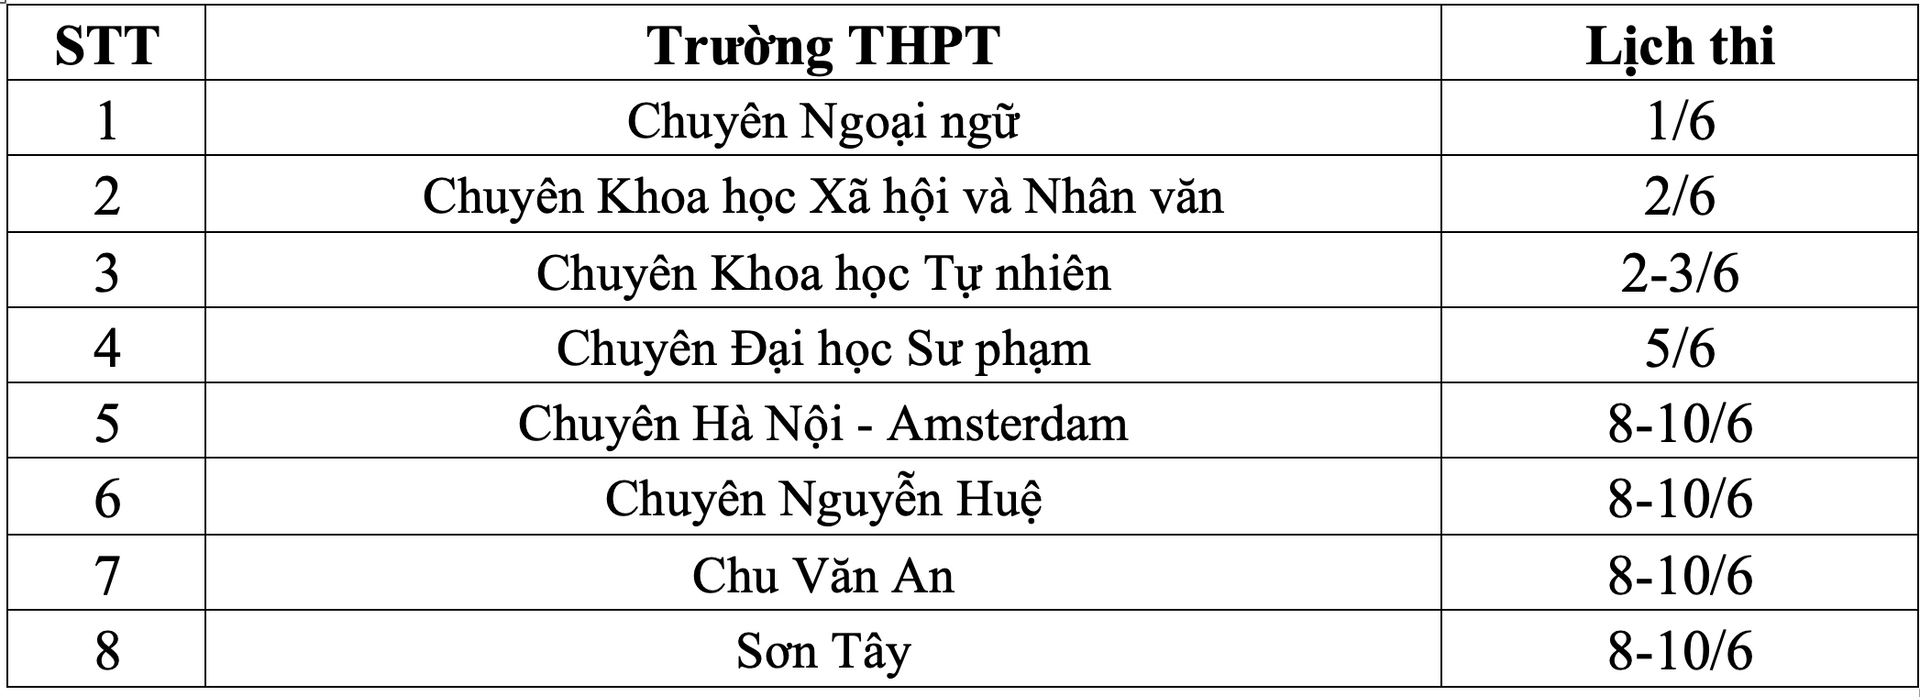 Lịch thi các trường THPT chuyên ở Hà Nội.